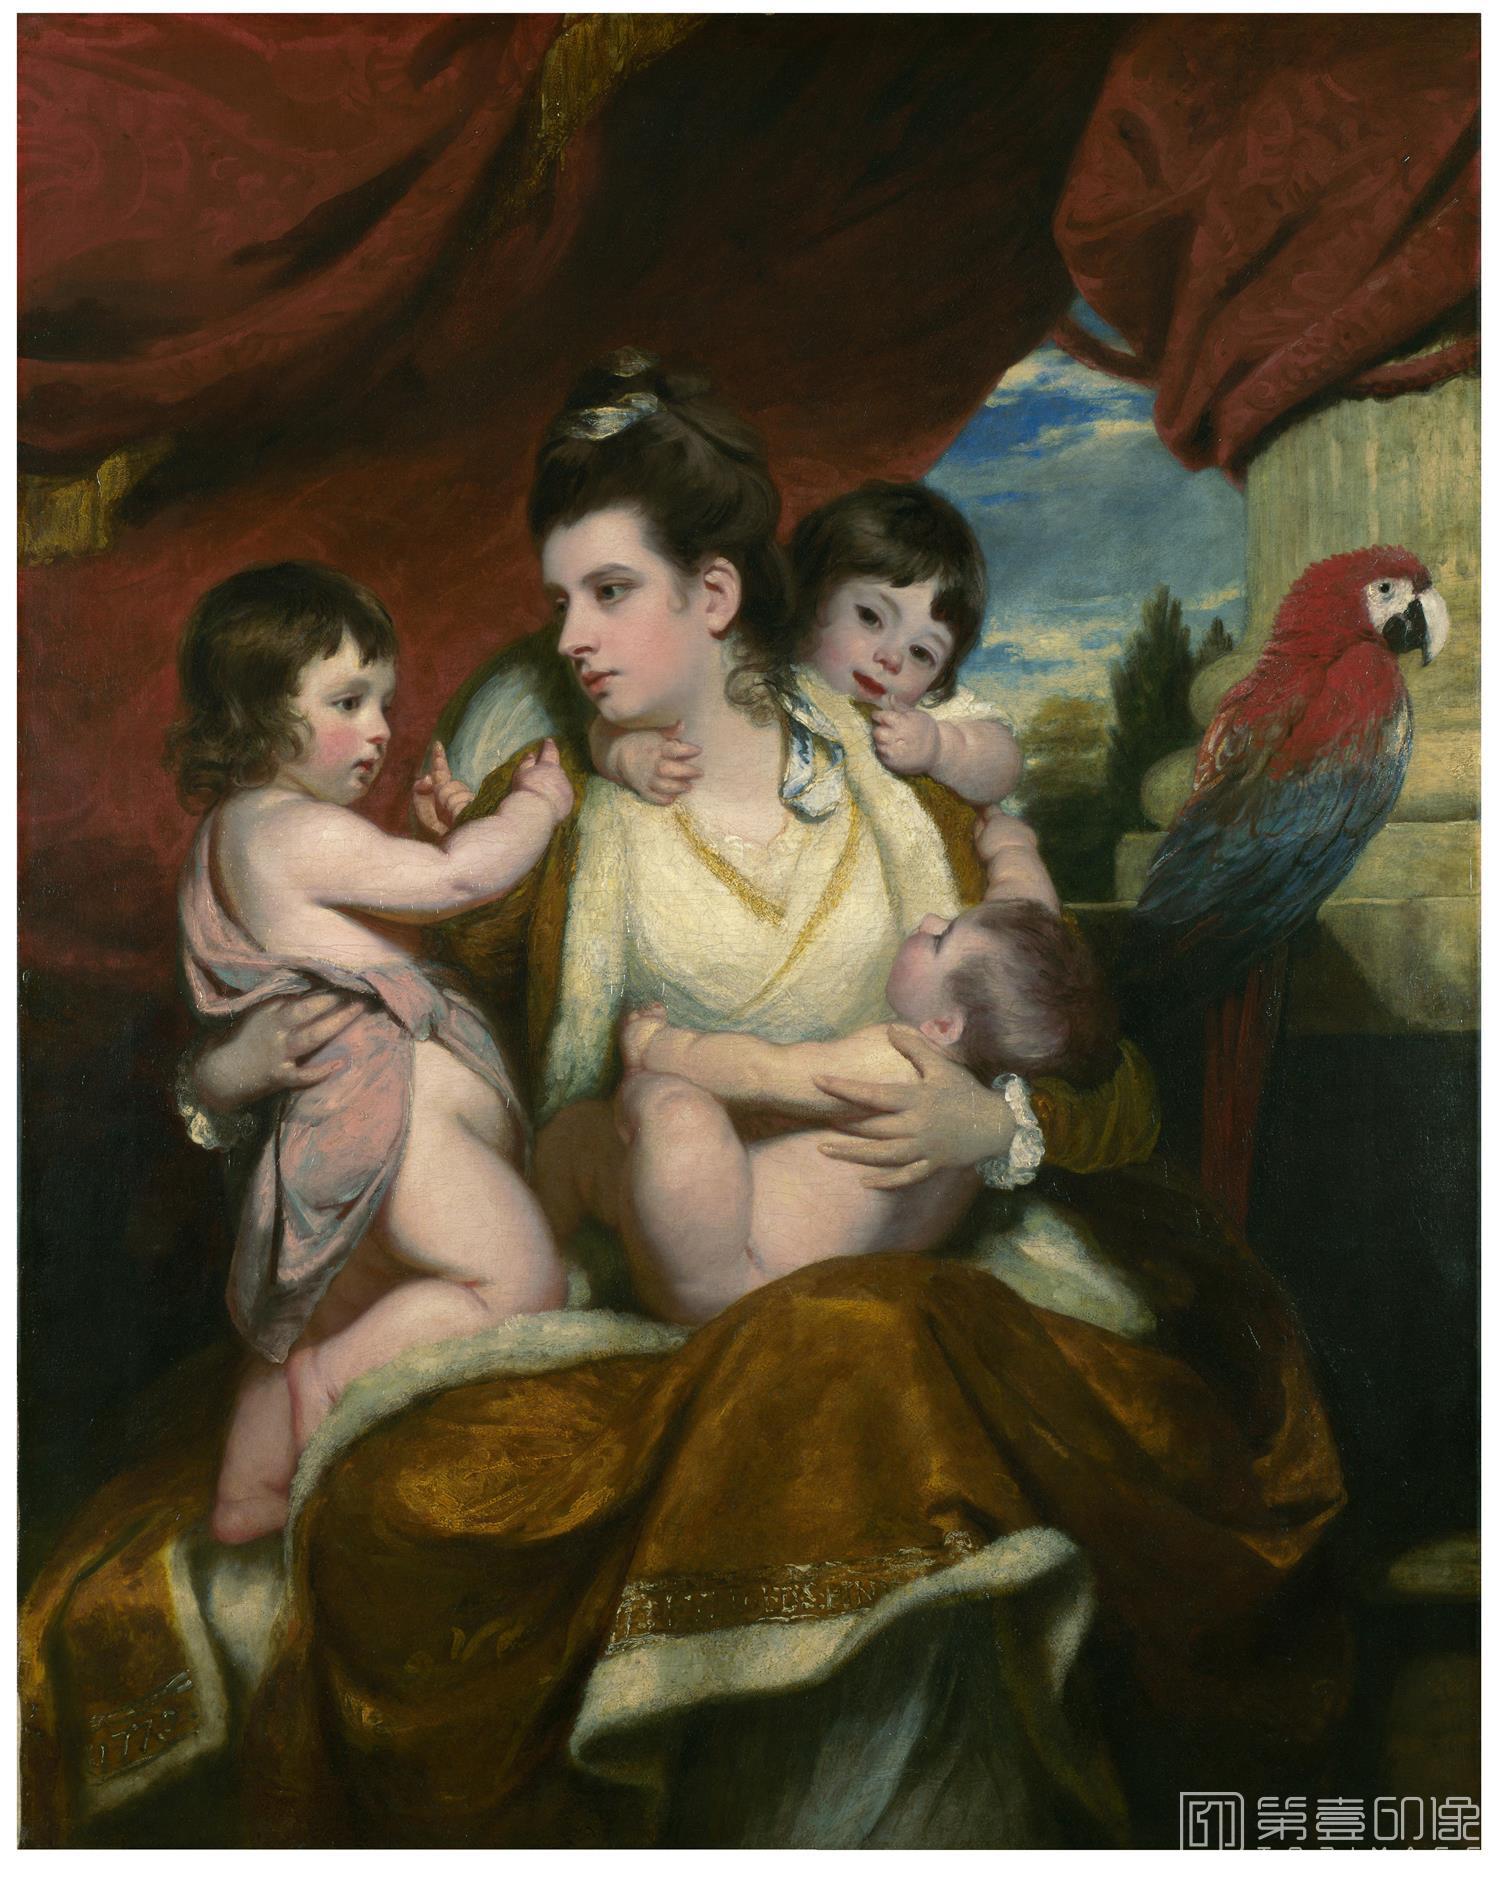 油画-油画-国内外油画-伦敦馆藏油画名作- (英)雷诺兹 柯克班夫人及其三个儿子 伦敦国立美术馆藏 1773 年